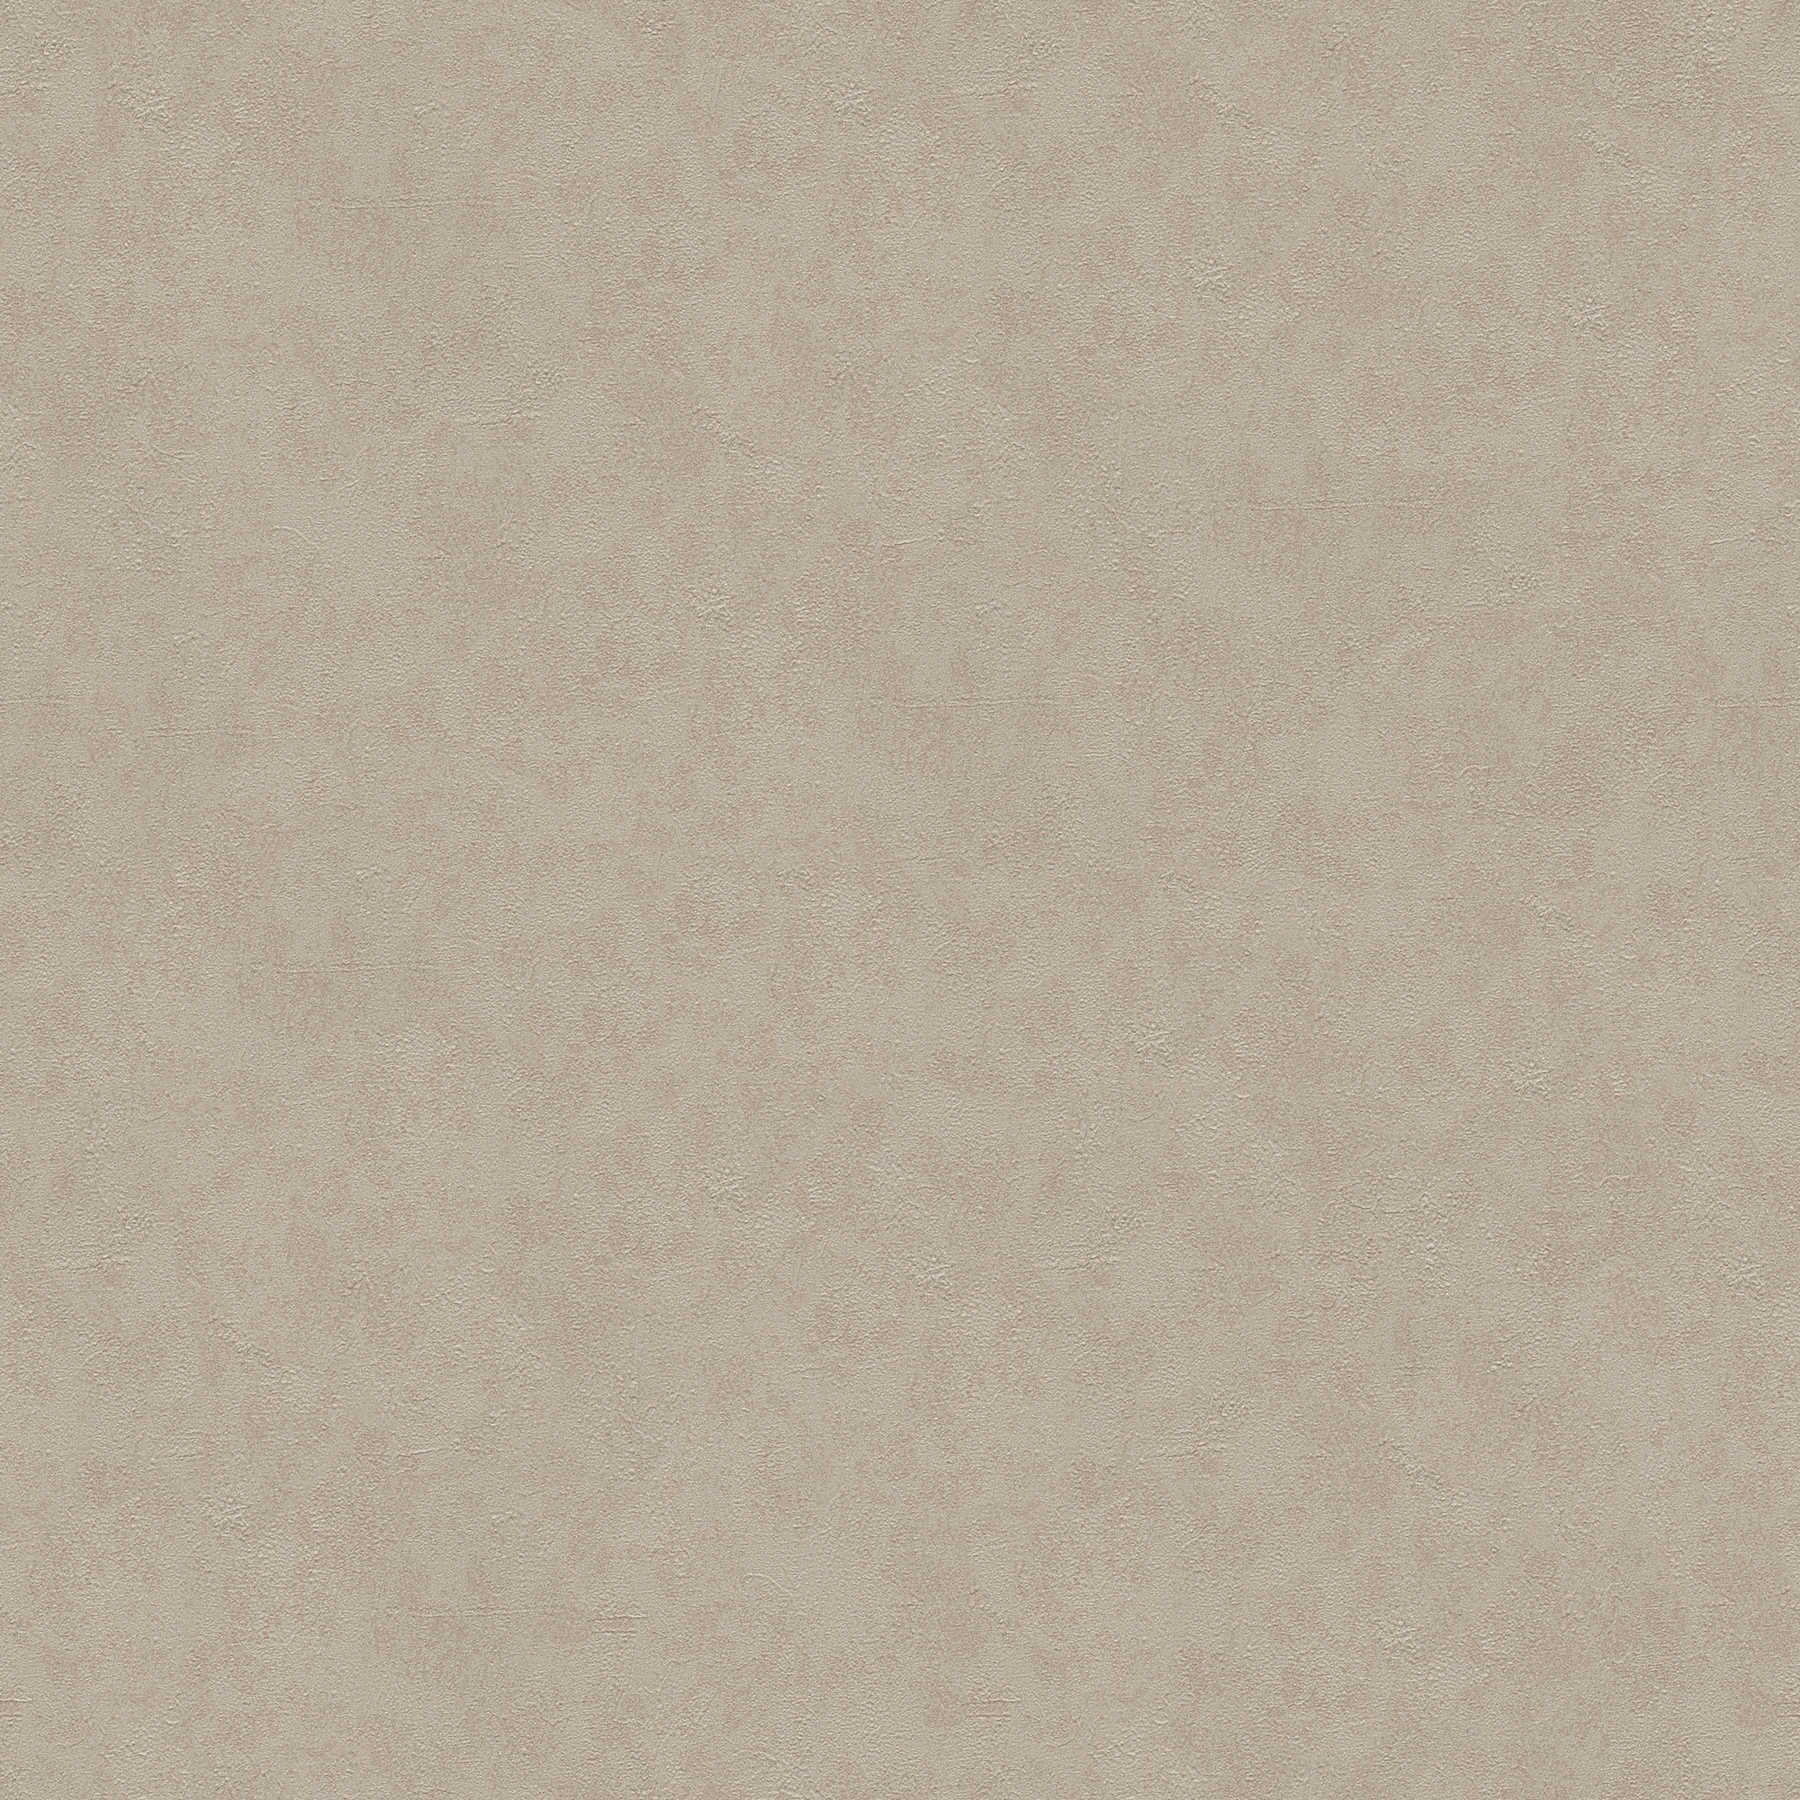 Gipsvezelbehang natuurtint met kleur arceringen - bruin
